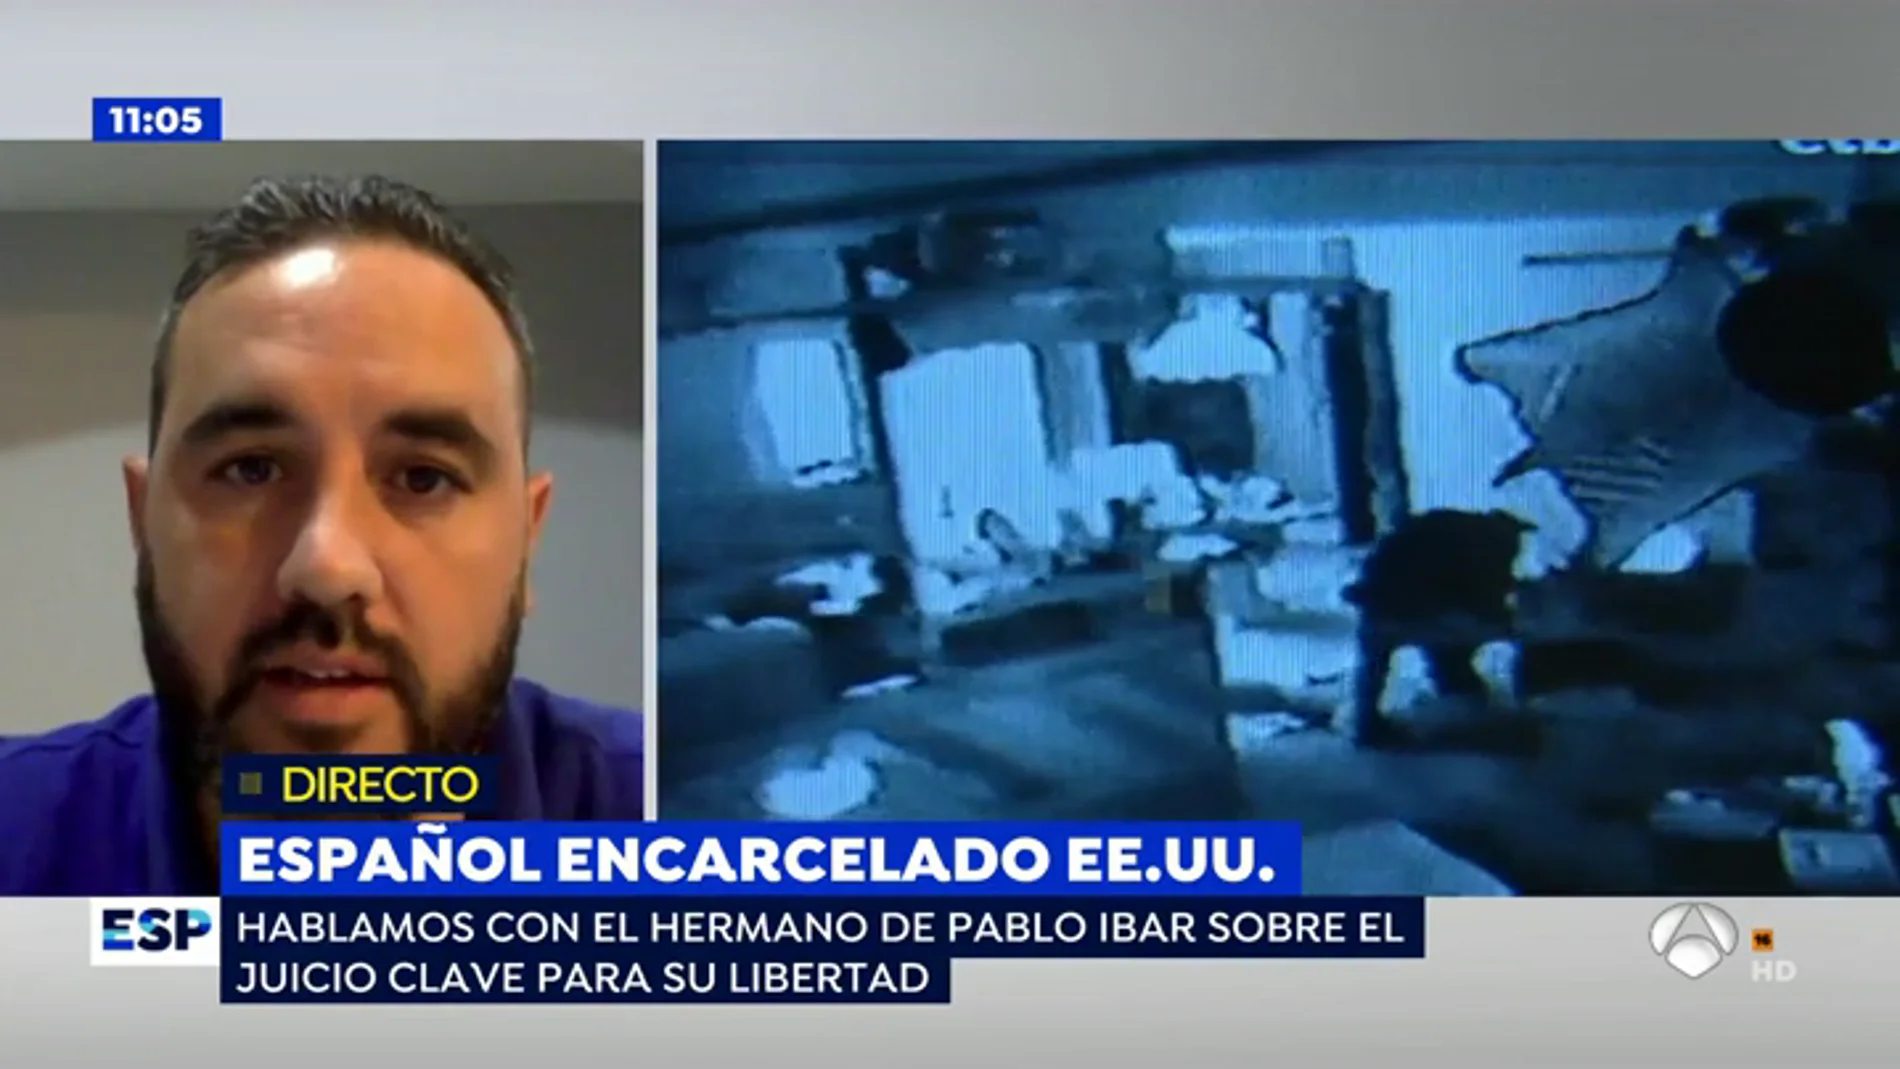 Pablo Ibar vuelve a ser juzgado tras pasar 16 años en el corredor de la muerte: "Es una nueva oportunidad en la que se juega literalmente la vida"